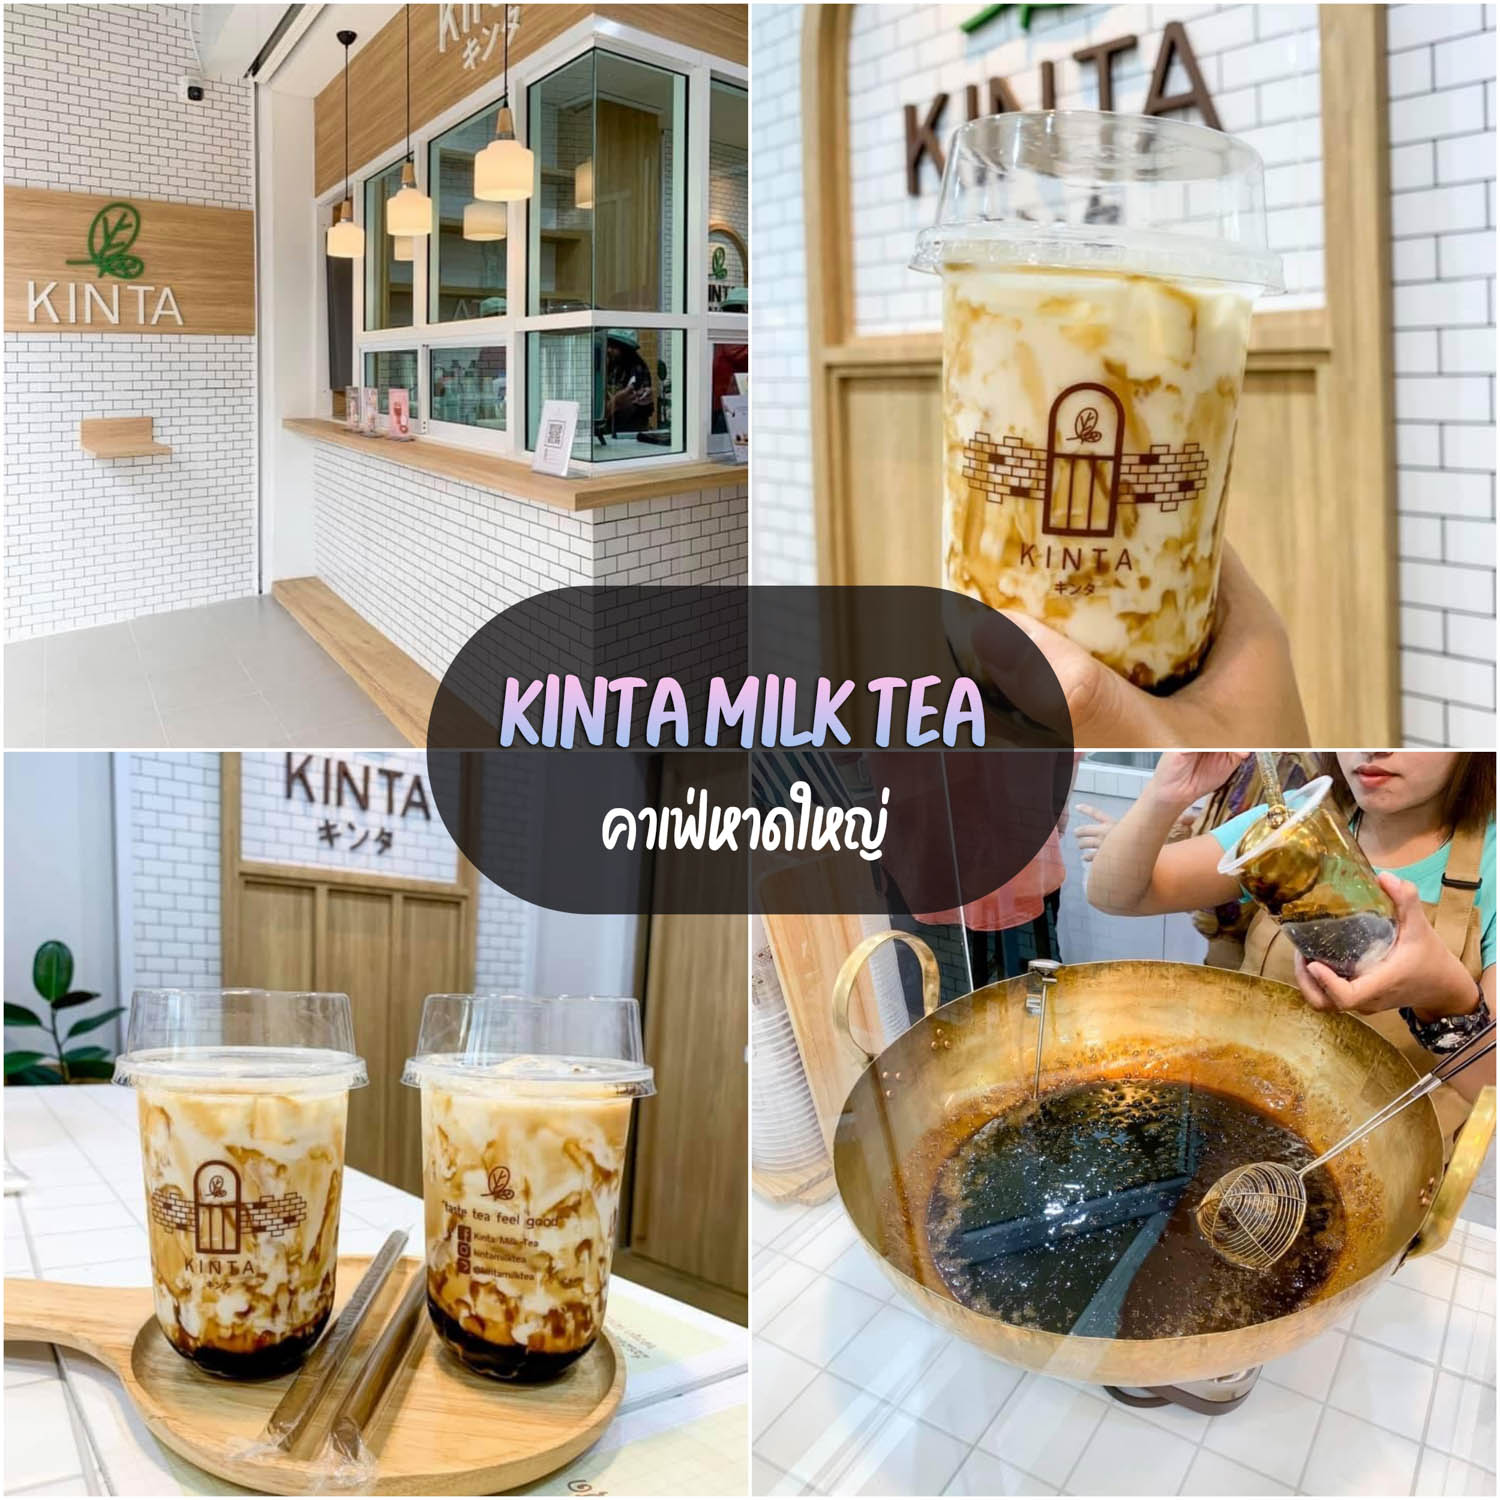 Kinta Milk Tea กินตะ ชานมไข่มุก คาเฟ่หาดใหญ่สไตล์มินิมอล เบเกอรี่เพียบ ครอฟเฟิลอร่อยมวากก